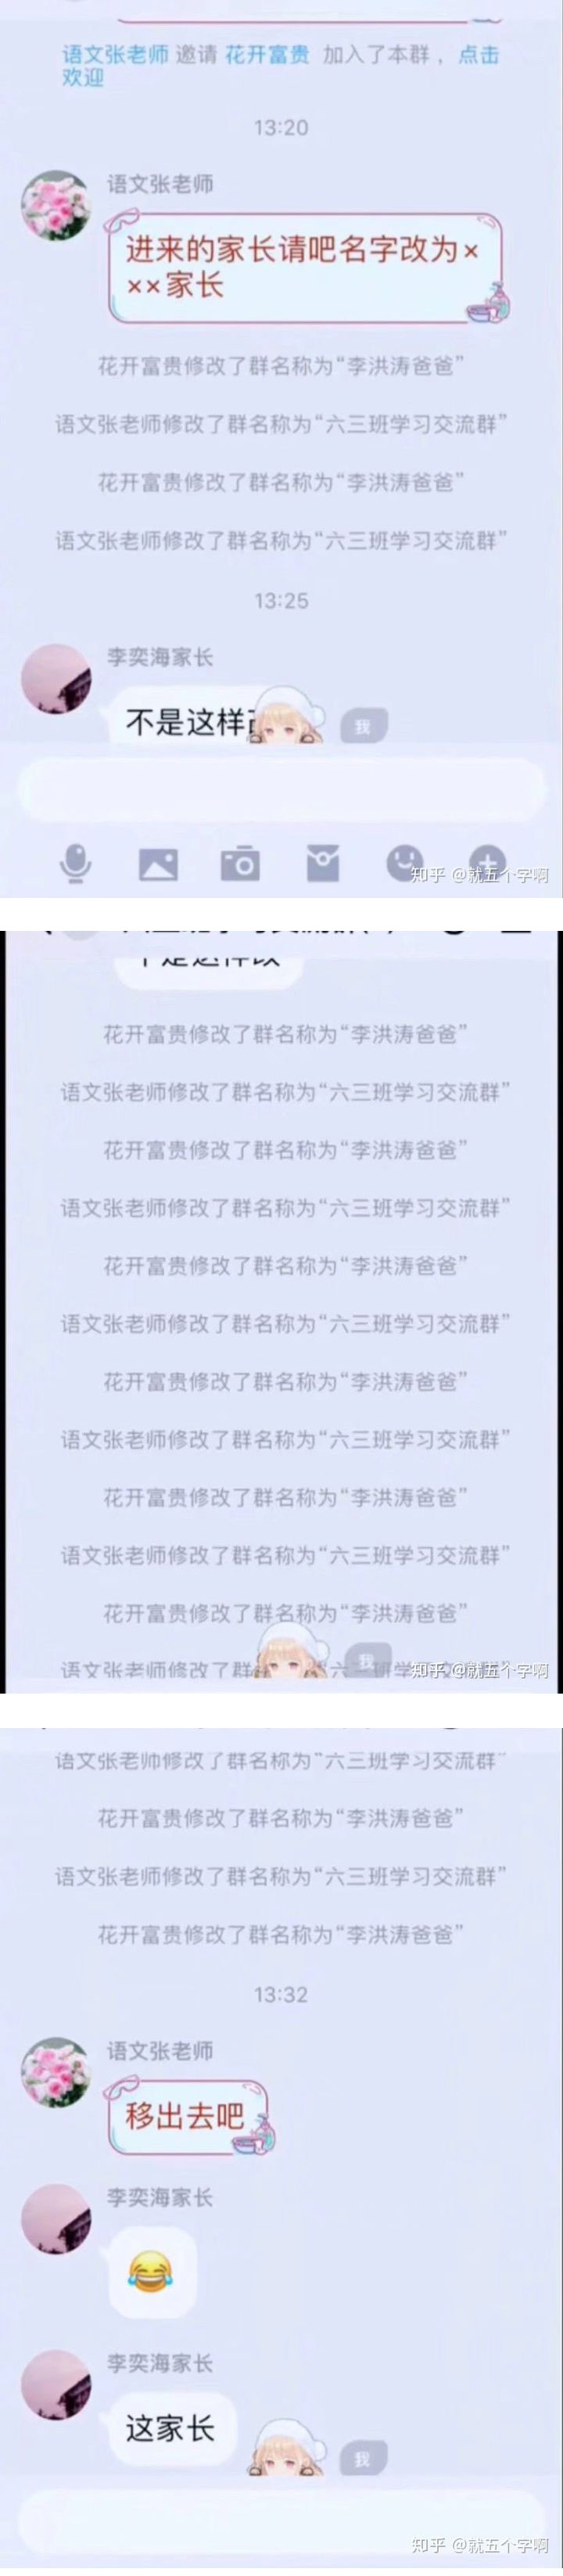 修改群名称：语文张老师和李洪涛爸爸的故事